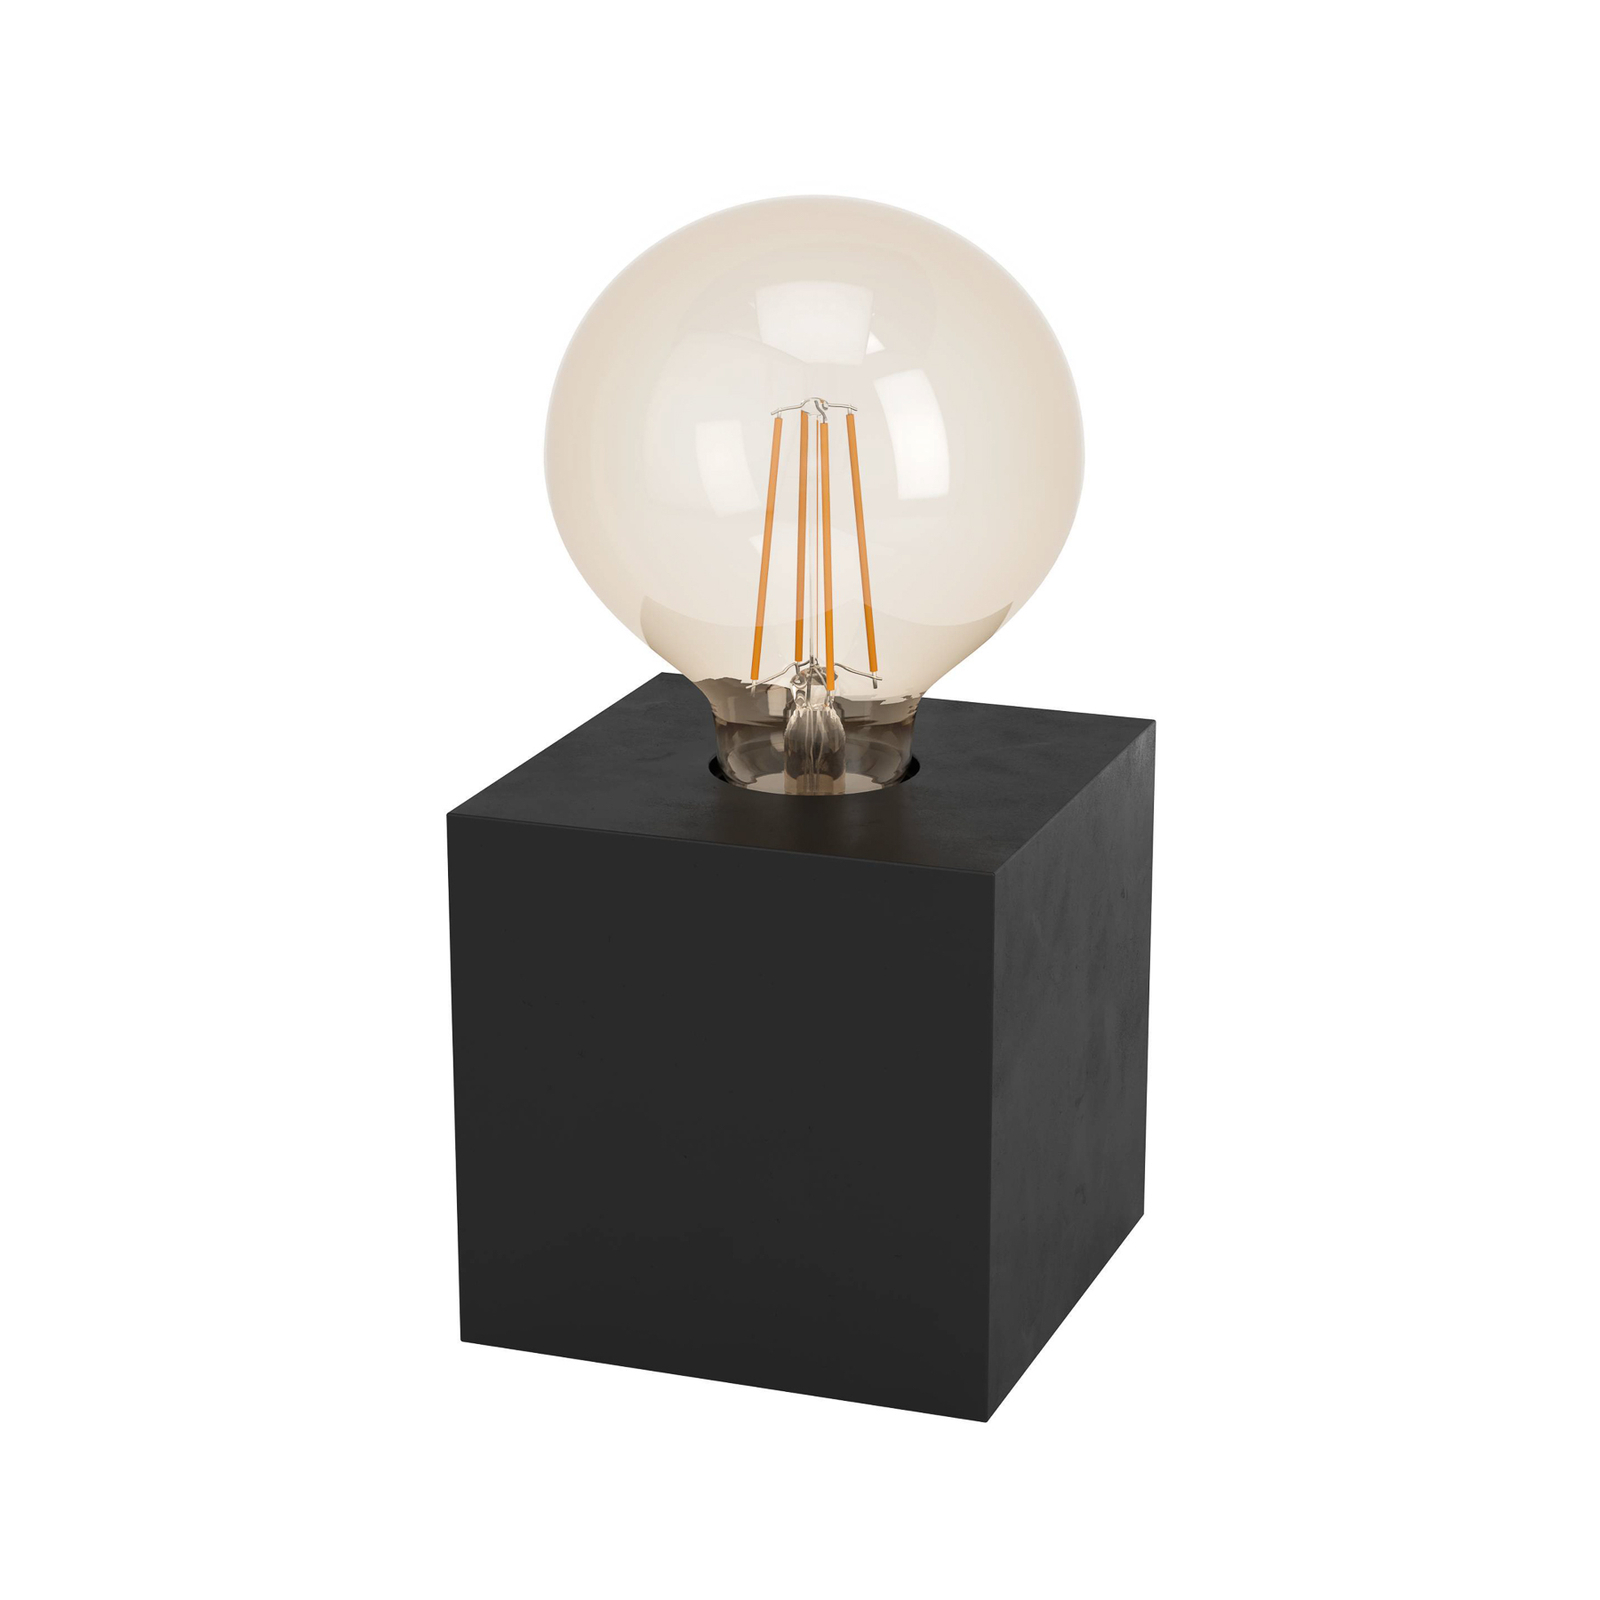 Tafellamp Prestwick 2 met houten kubus, zwart